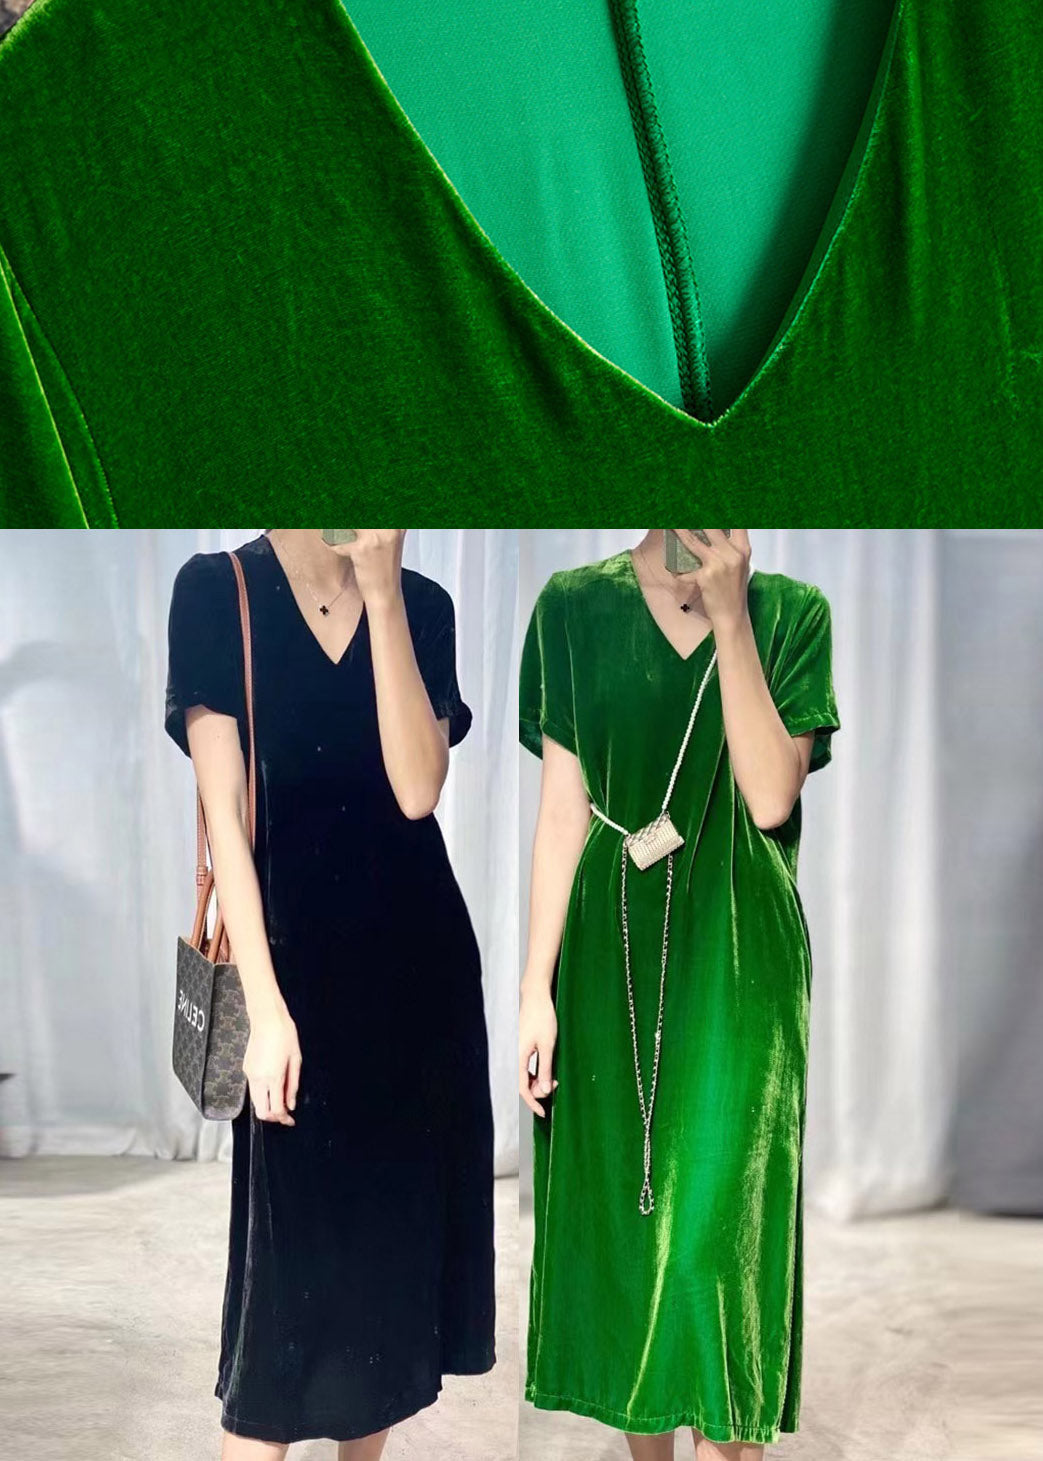 Bohemian Black Green V Neck Silk Velour Long Dresses Short Sleeve